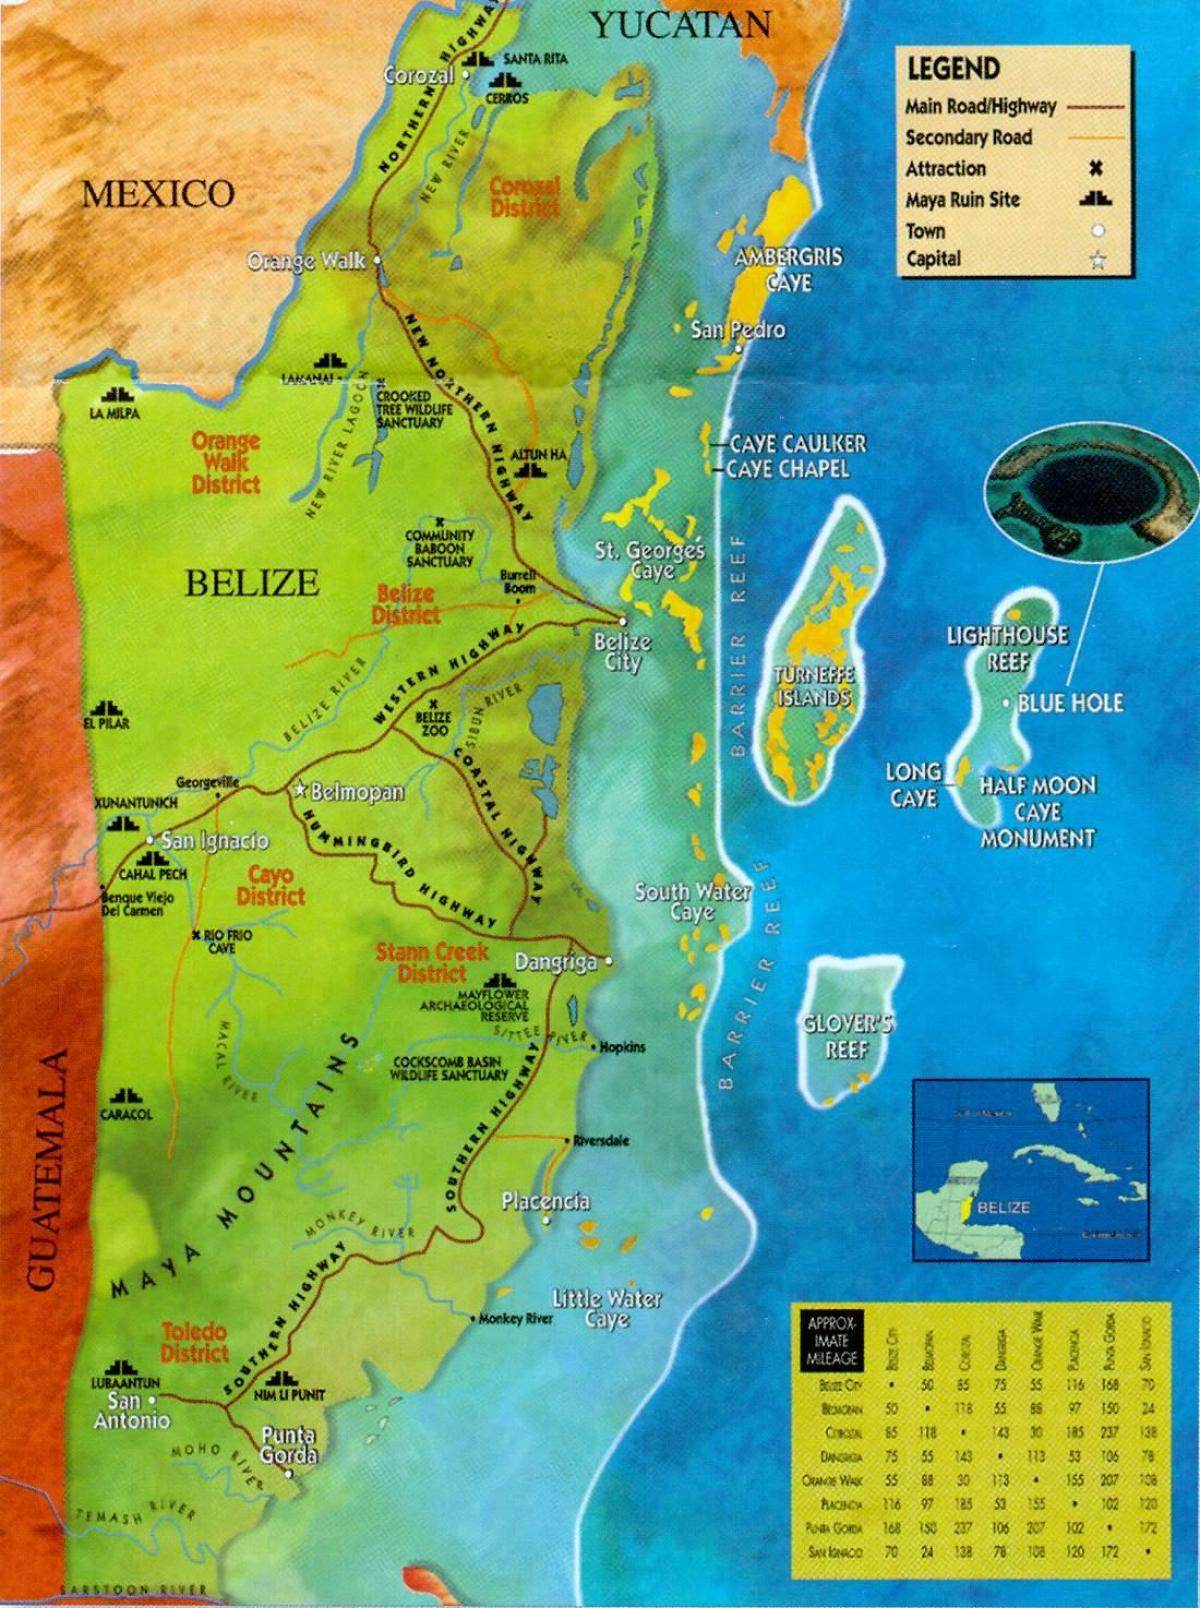 Belize ruines de la carte